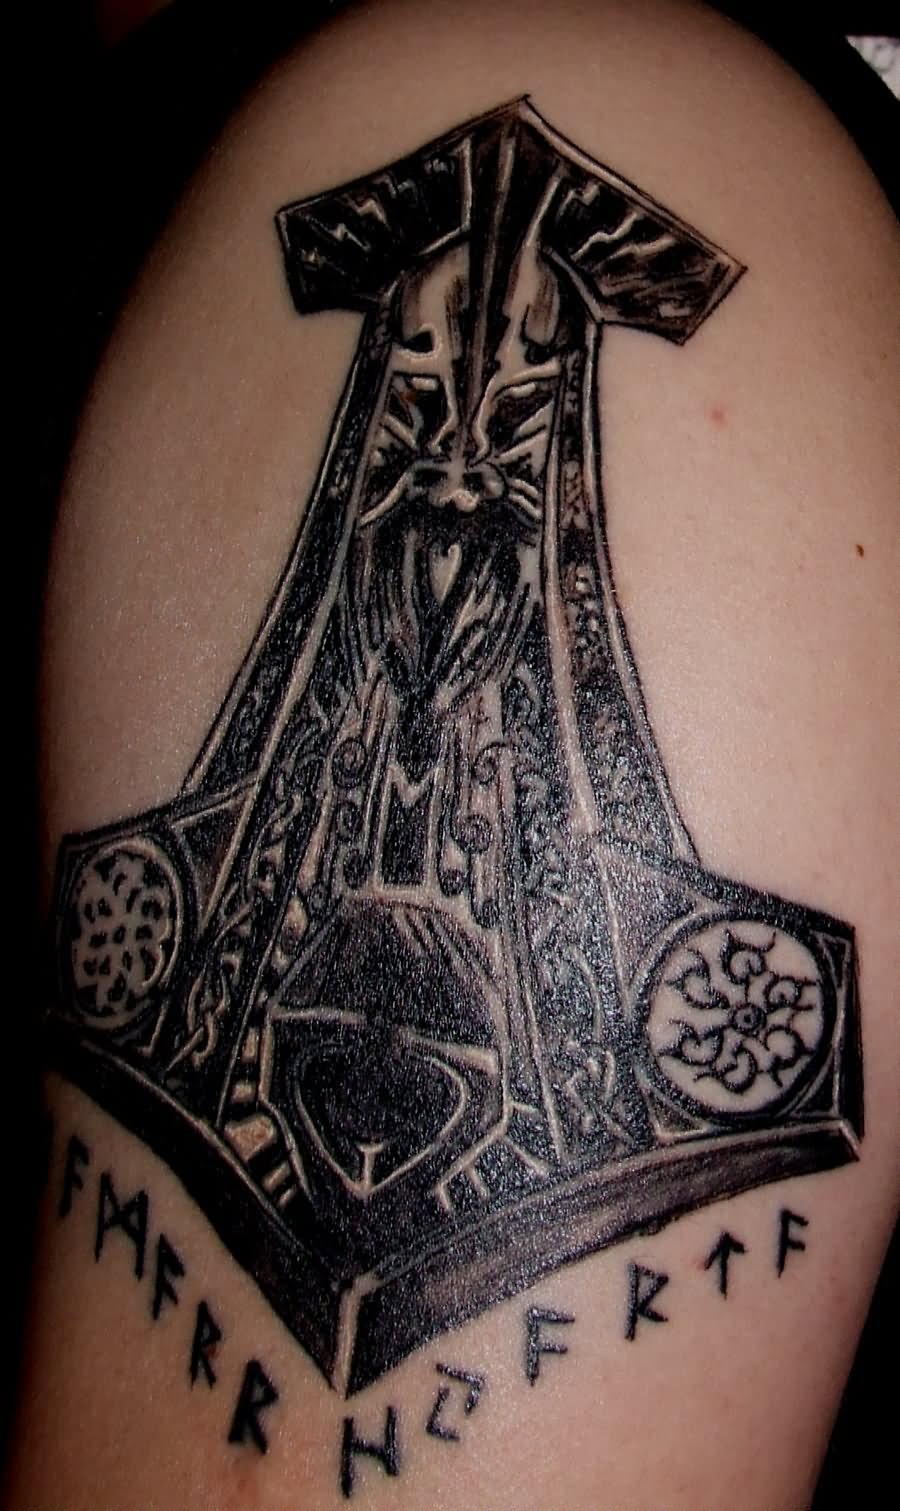 Black Ink Thor Hammer Symbol Tattoo Design For Shoulder By Drecu Dreculea